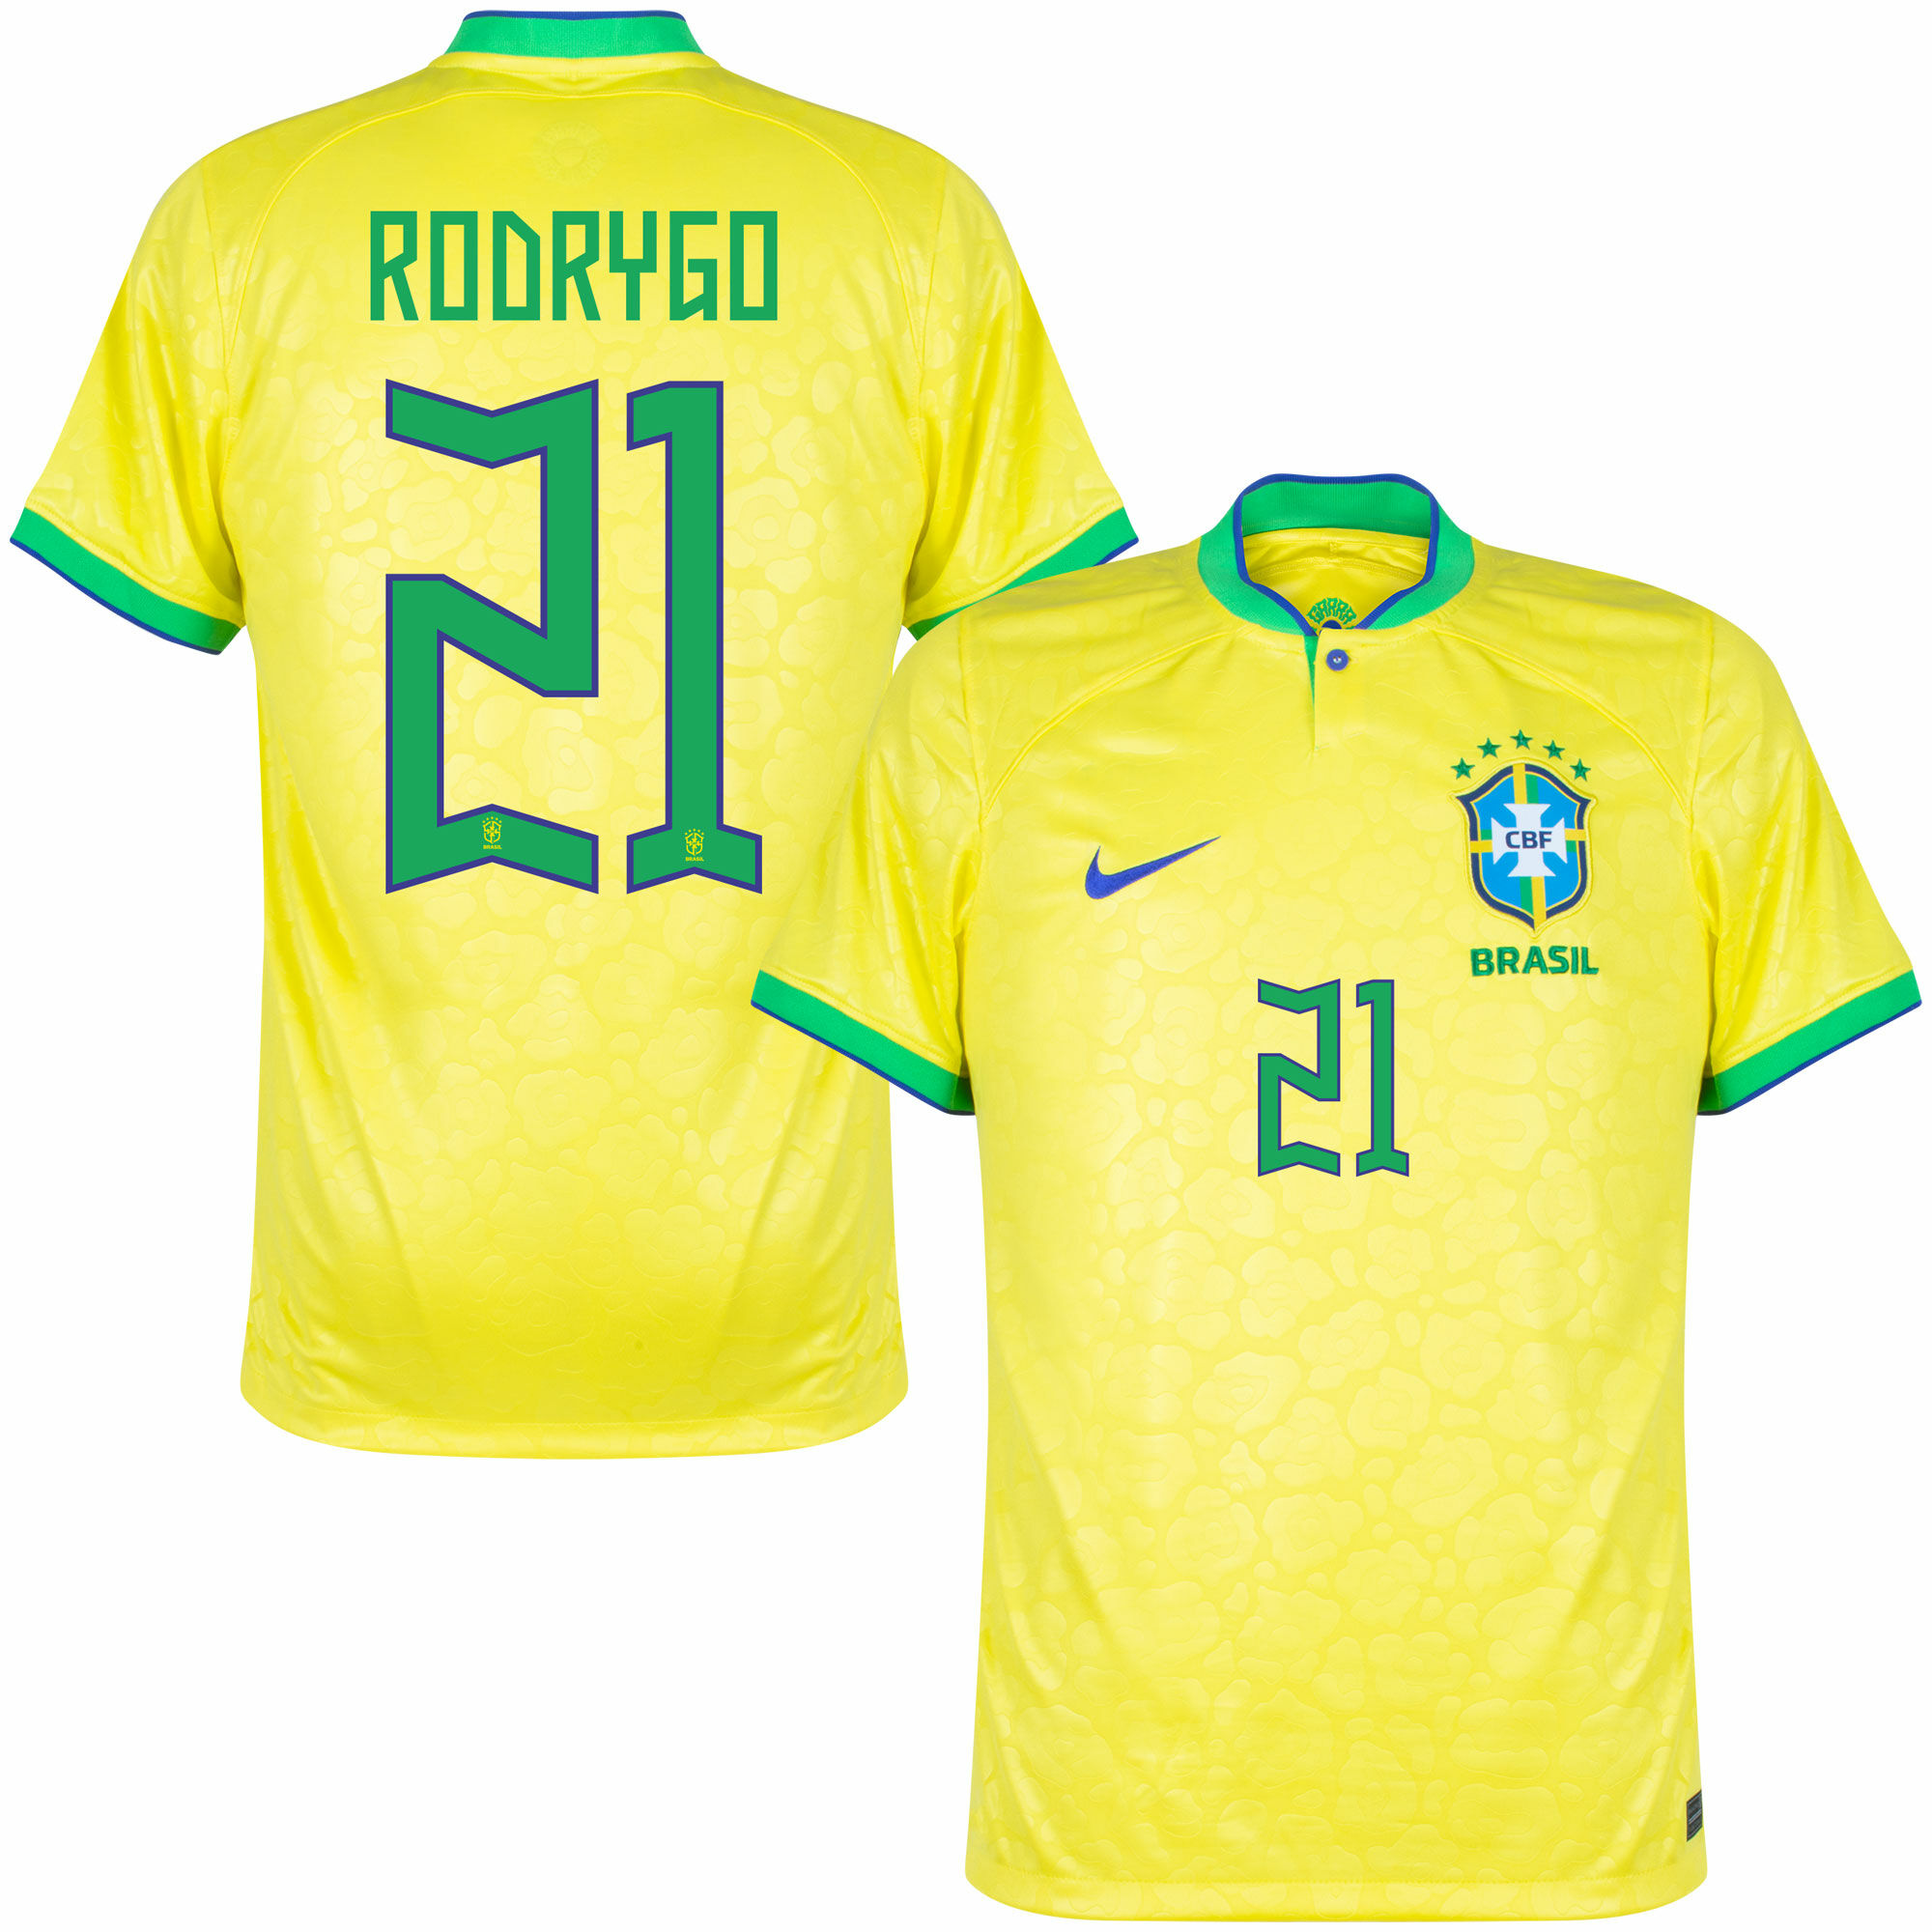 Brazílie - Dres fotbalový - oficiální potisk, Rodrygo, žlutý, číslo 21, domácí, sezóna 2022/23